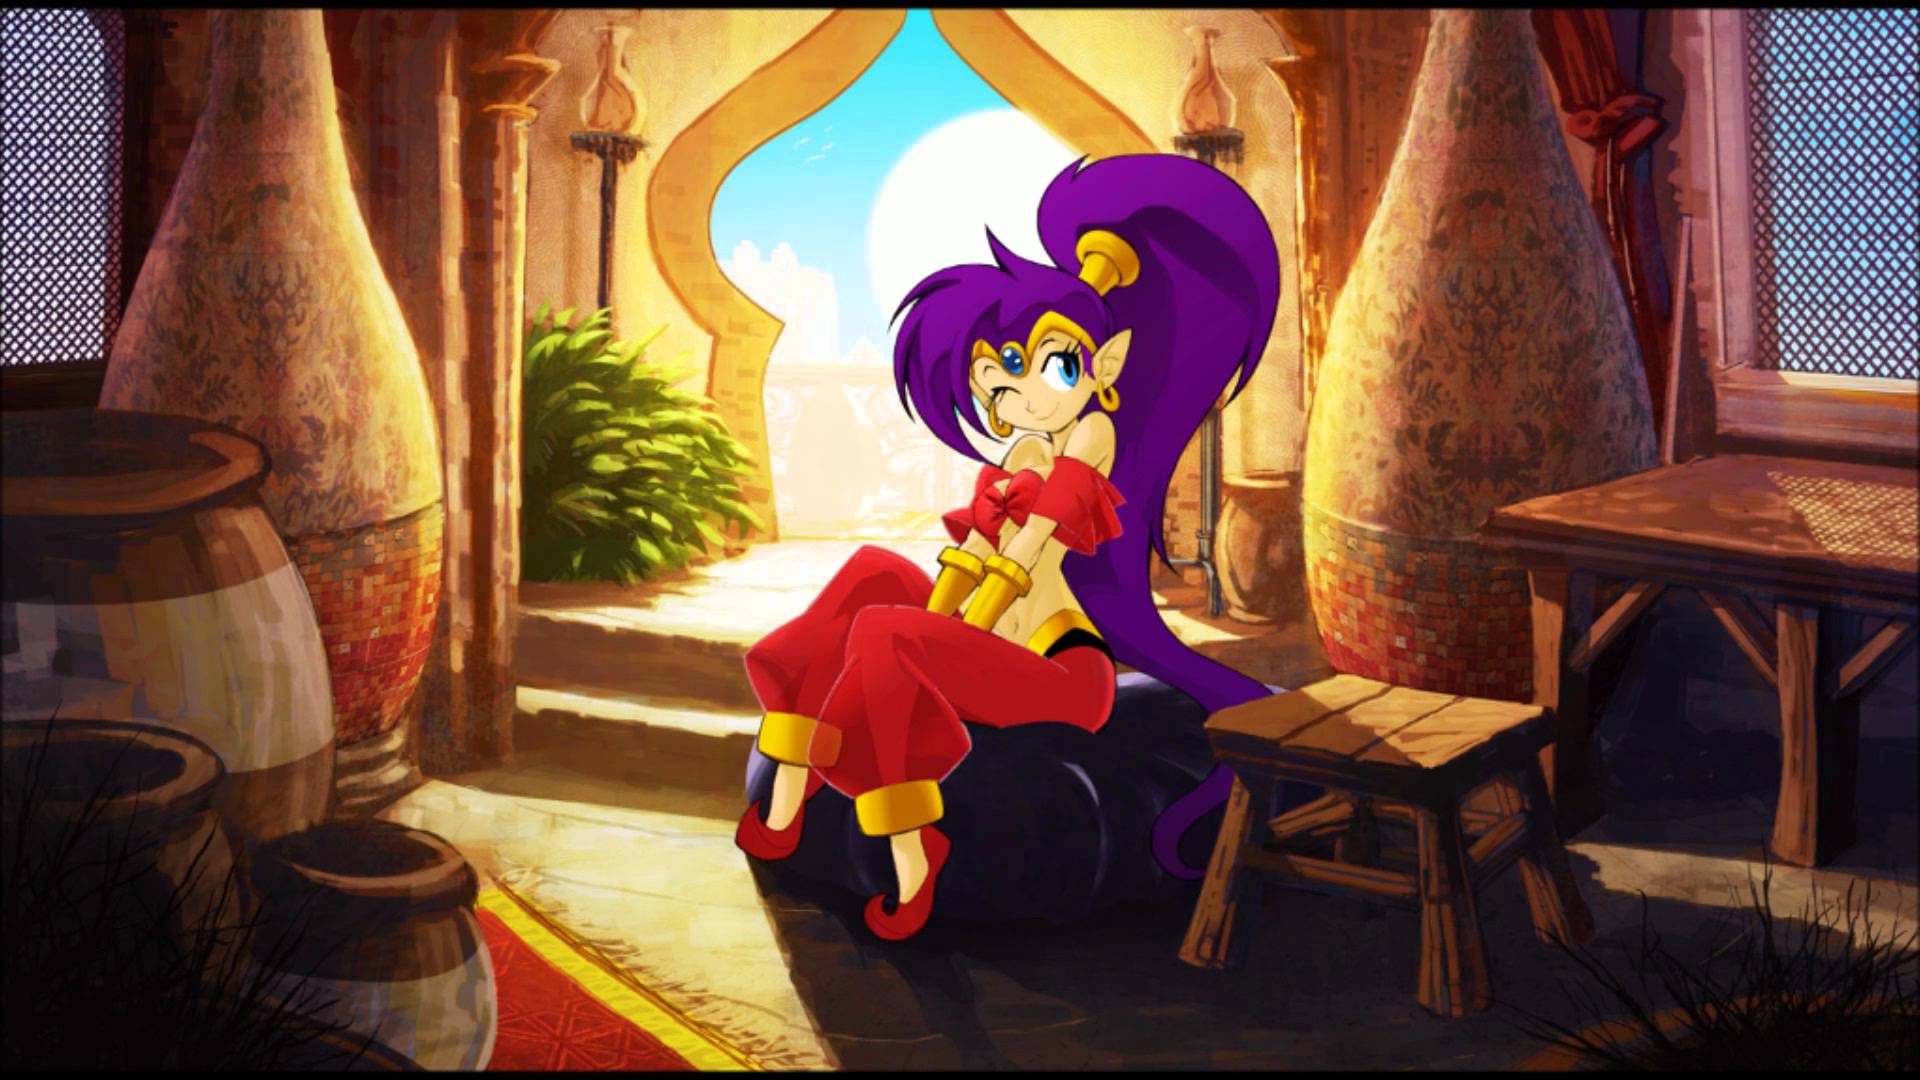 Shantae: Risky's Revenge Backgrounds, Compatible - PC, Mobile, Gadgets| 1920x1080 px